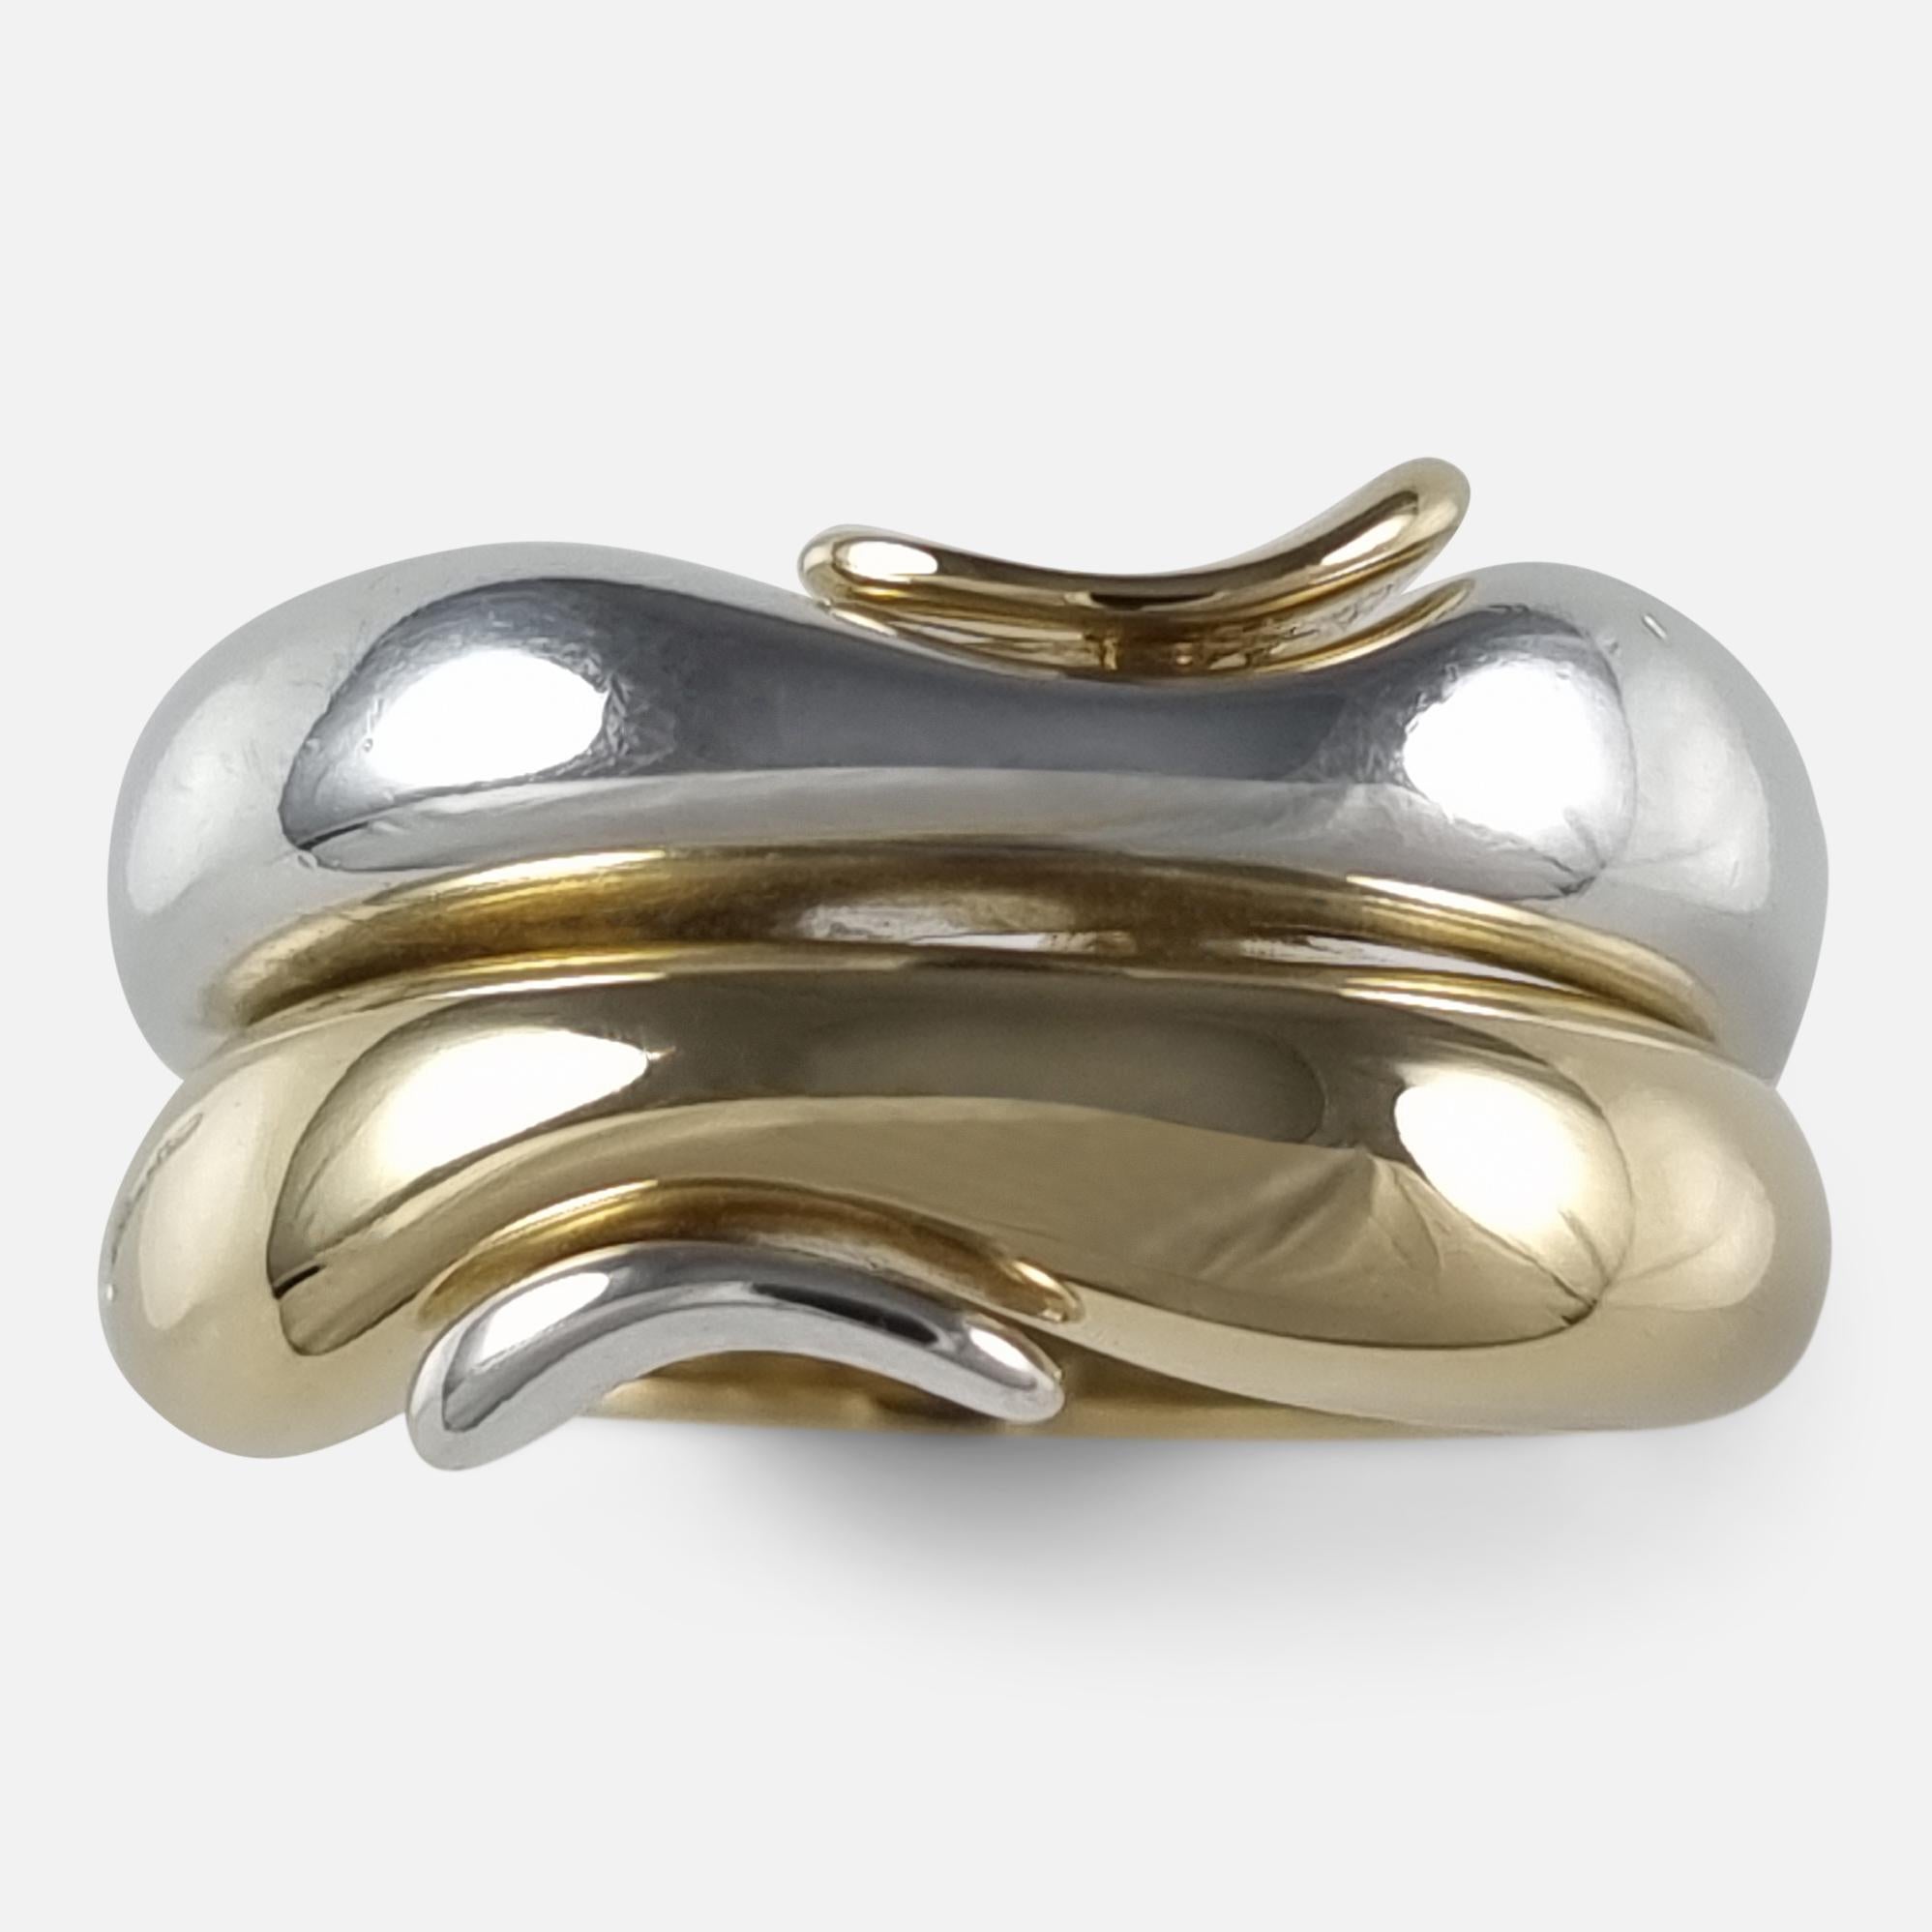 George Jensen 18ct Gold & Silver Ring, Minas Spiridis 8